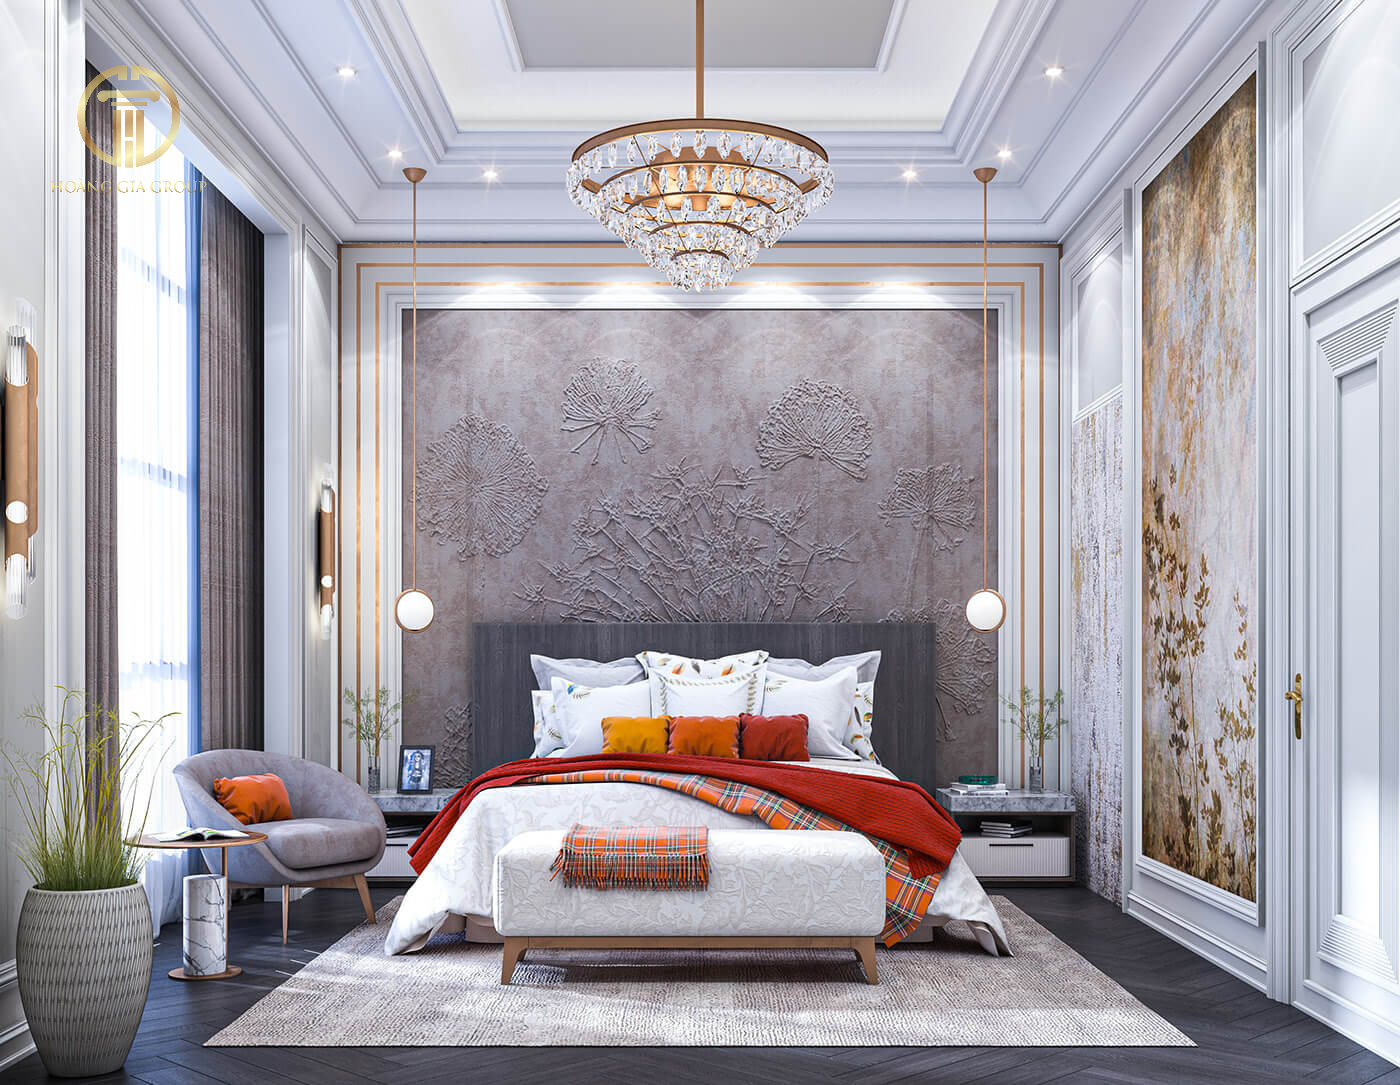 Sự sáng tạo trong thiết kế phòng ngủ tân cổ điển với điểm nhấn màu cam và hoạ tiết caro nổi bật